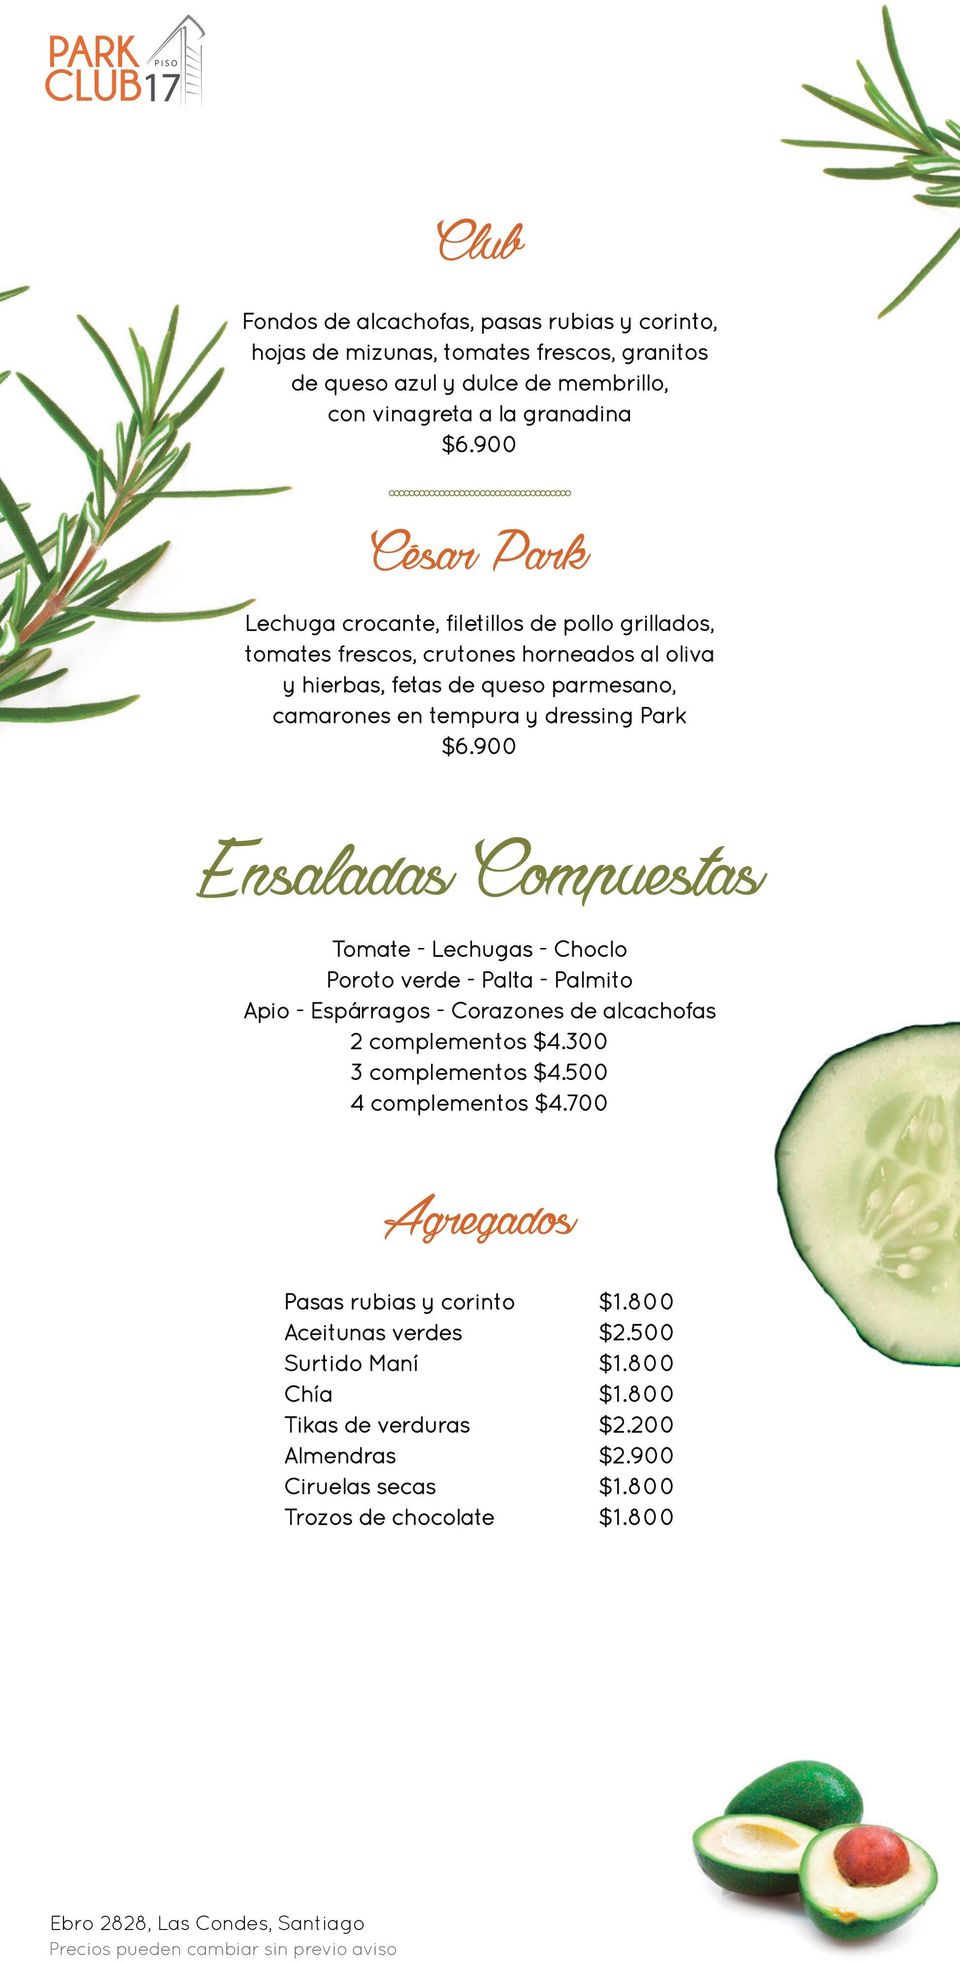 Park Ensaladas Compuestas Tomate - Lechugas - Choclo Poroto verde - Palta - Palmito Apio - Espárragos - Corazones de alcachofas 2 complementos $4.300 3 complementos $4.